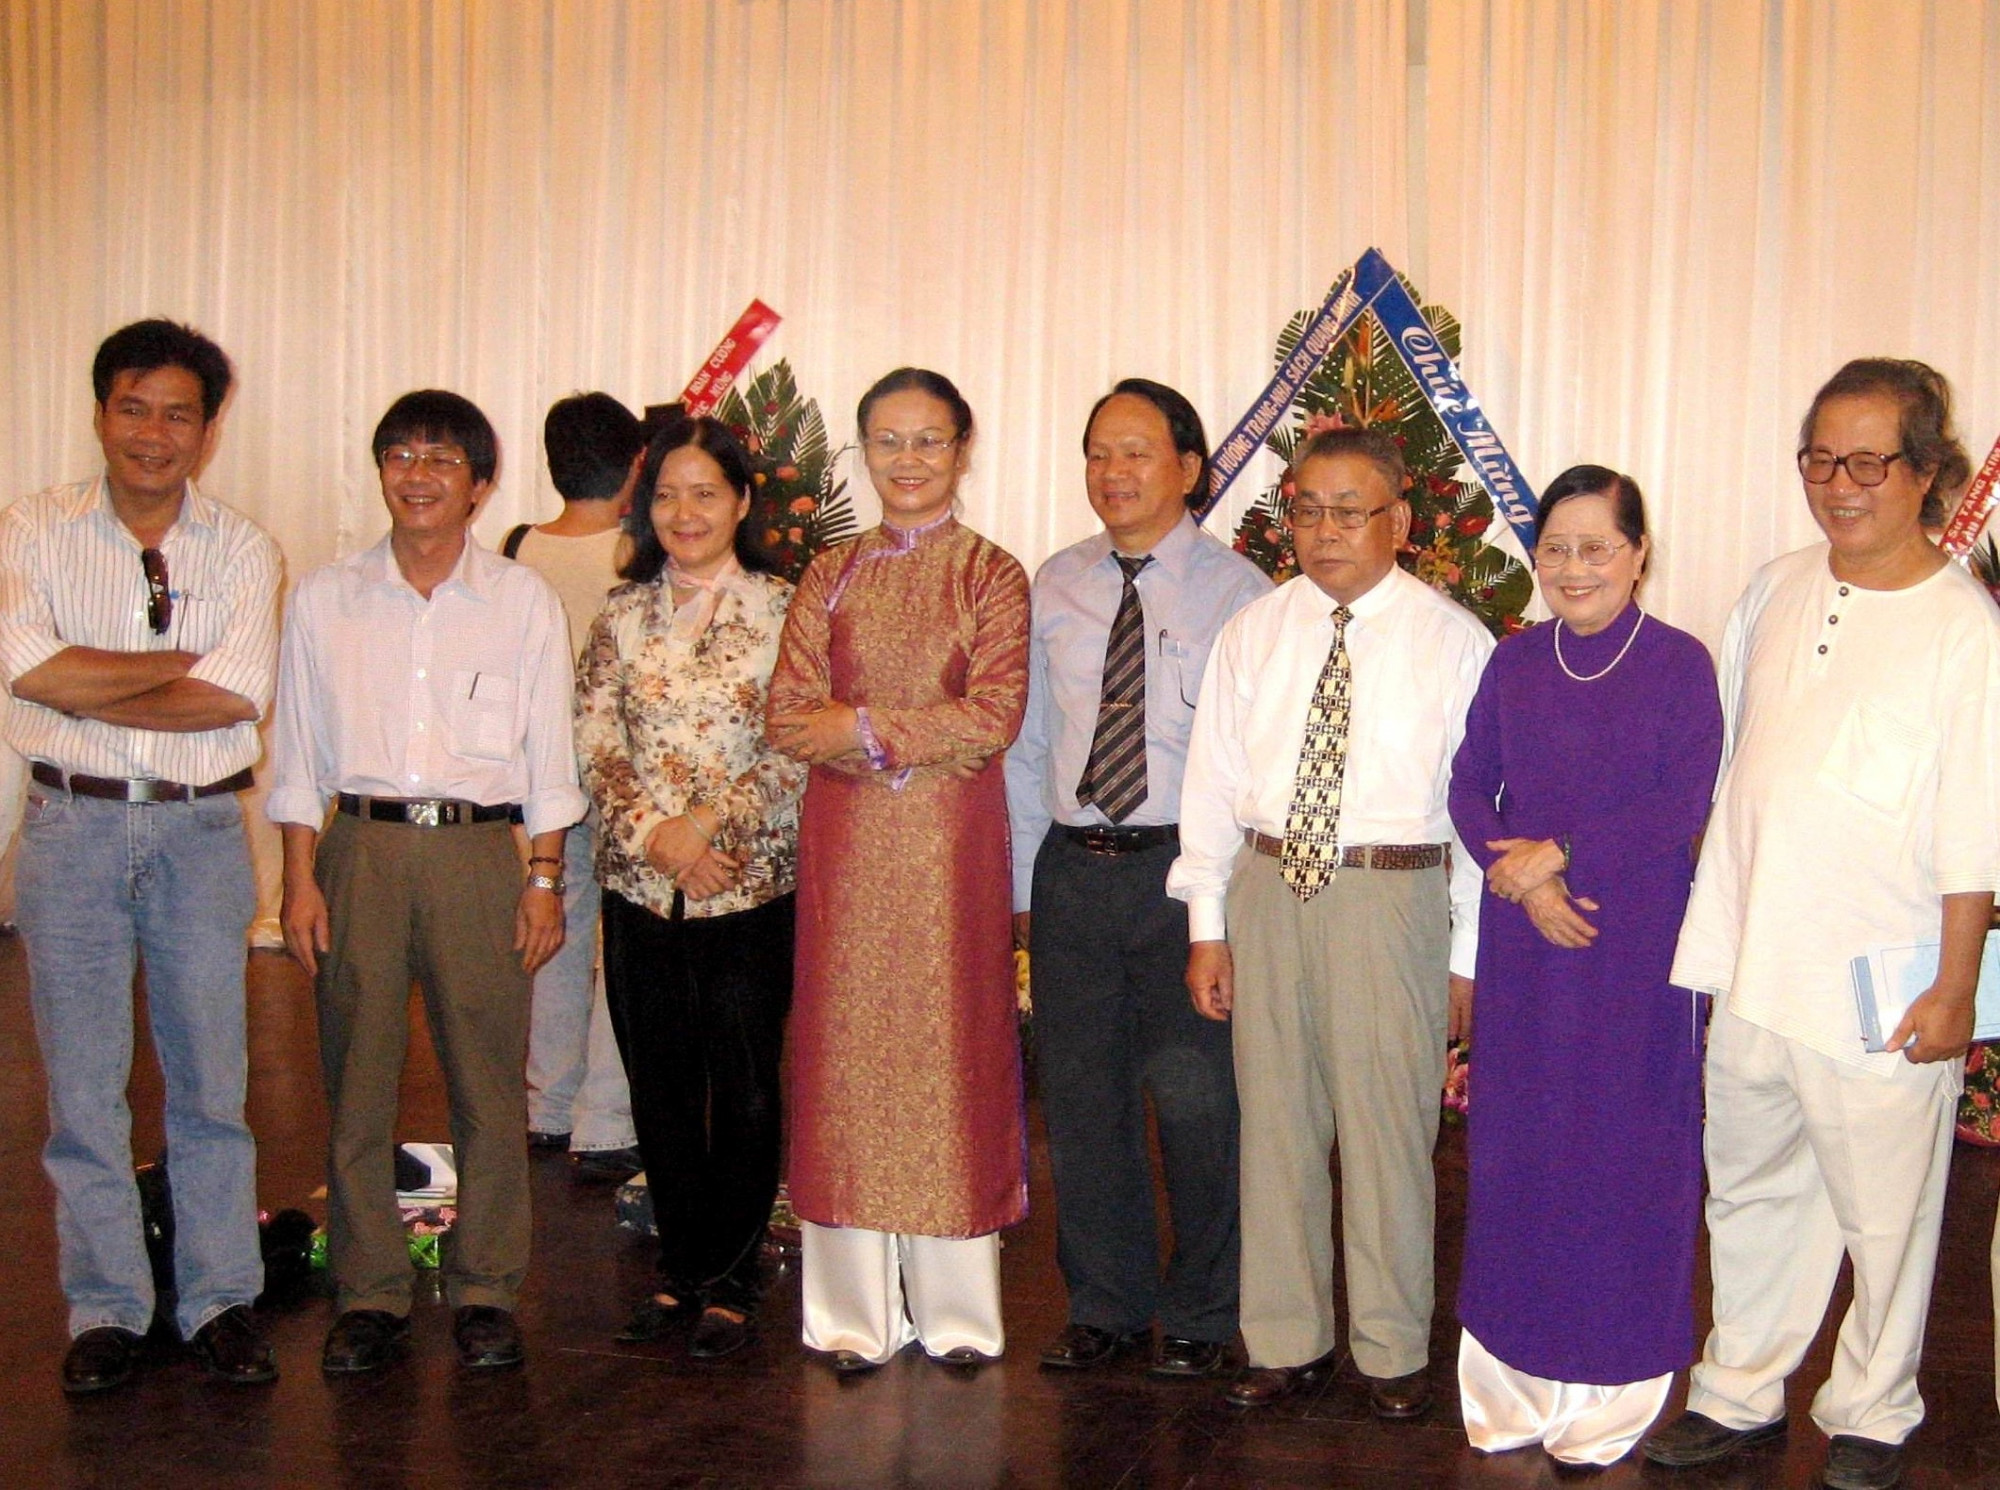 Từ trái: Lê Minh Quốc, Trương Nam Hương, Tôn Nữ Thu Thủy, Hồ Đắc Thiếu Anh, Trần Hữu Lục, vợ chồng nhà thơ Tôn Nữ Hỷ Khương và Trương Thìn.